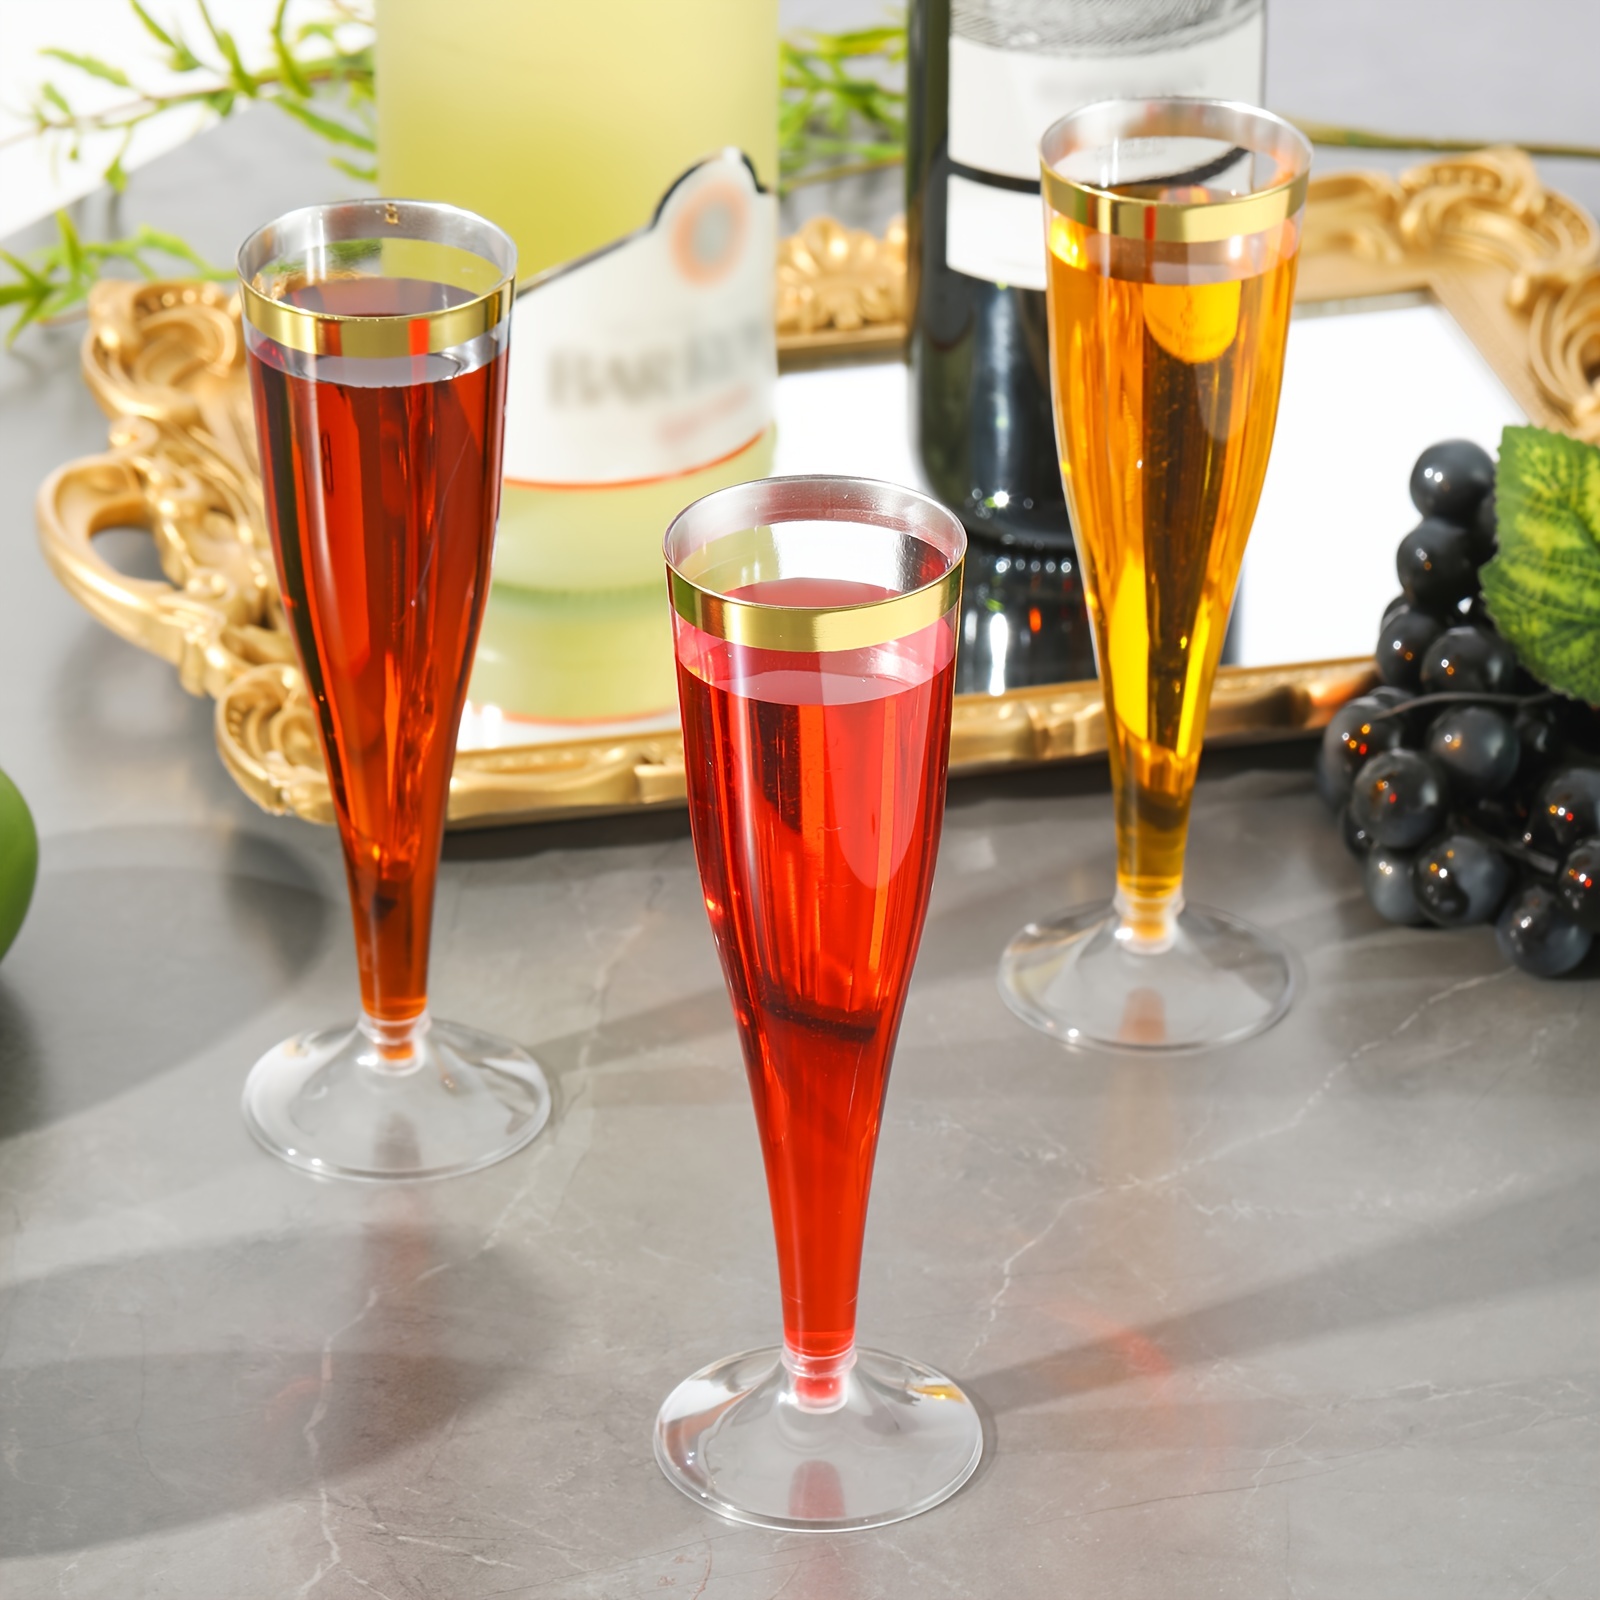 Nouvel an : flûte, coupe ou verre Comment boire votre champagne ?